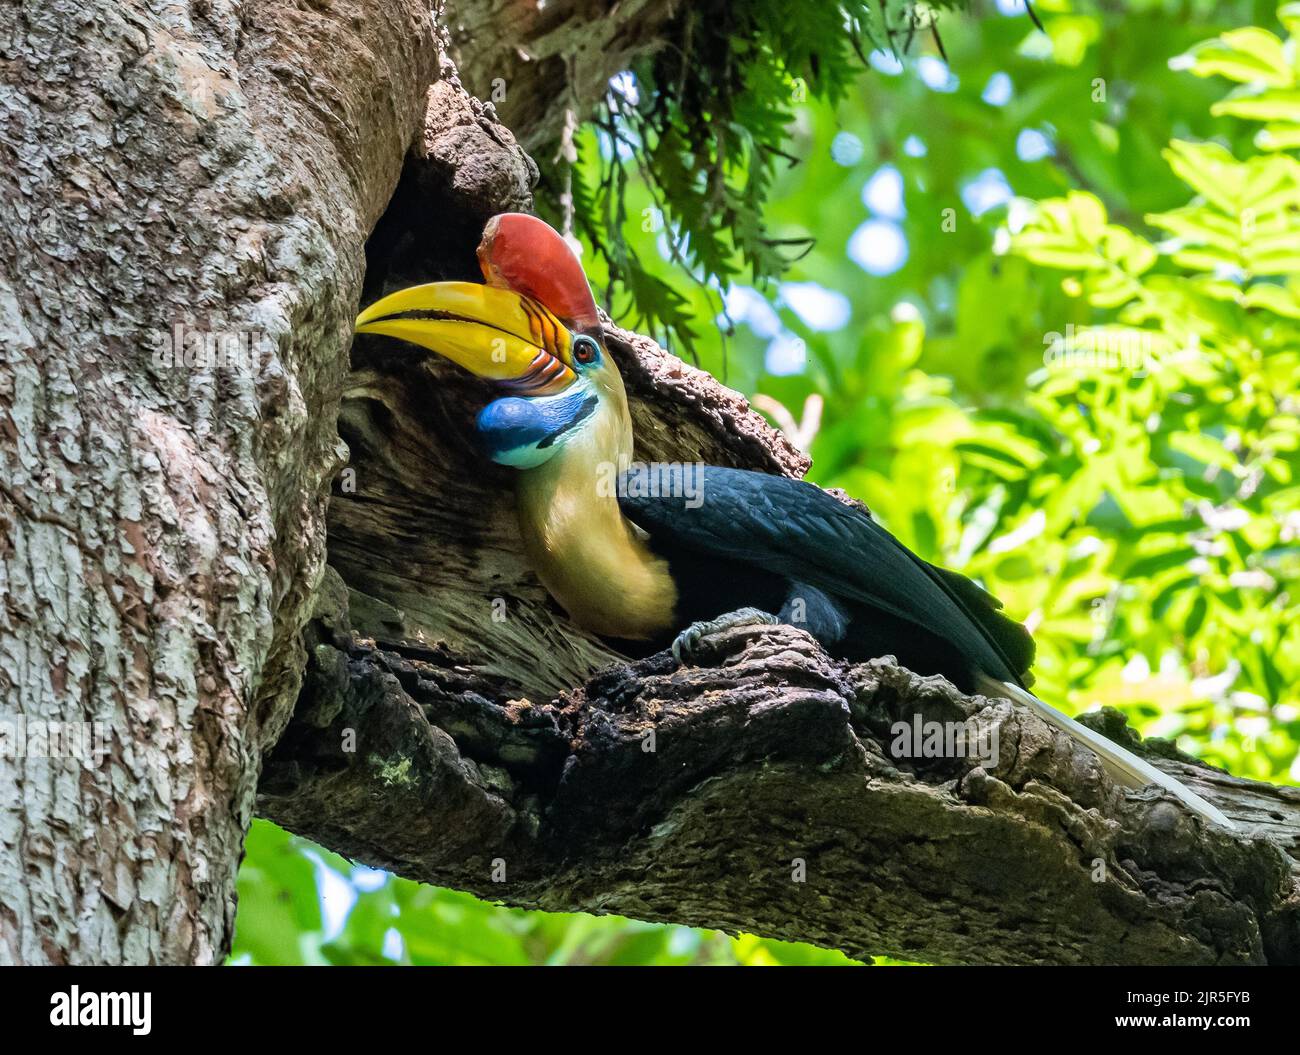 Un mâle a attrapé Hornbill (Rhyticeros cassidix) nourrissant une femelle reproductrice dans son nid. Parc national de Tangkoko, Sulawesi, Indonésie. Banque D'Images